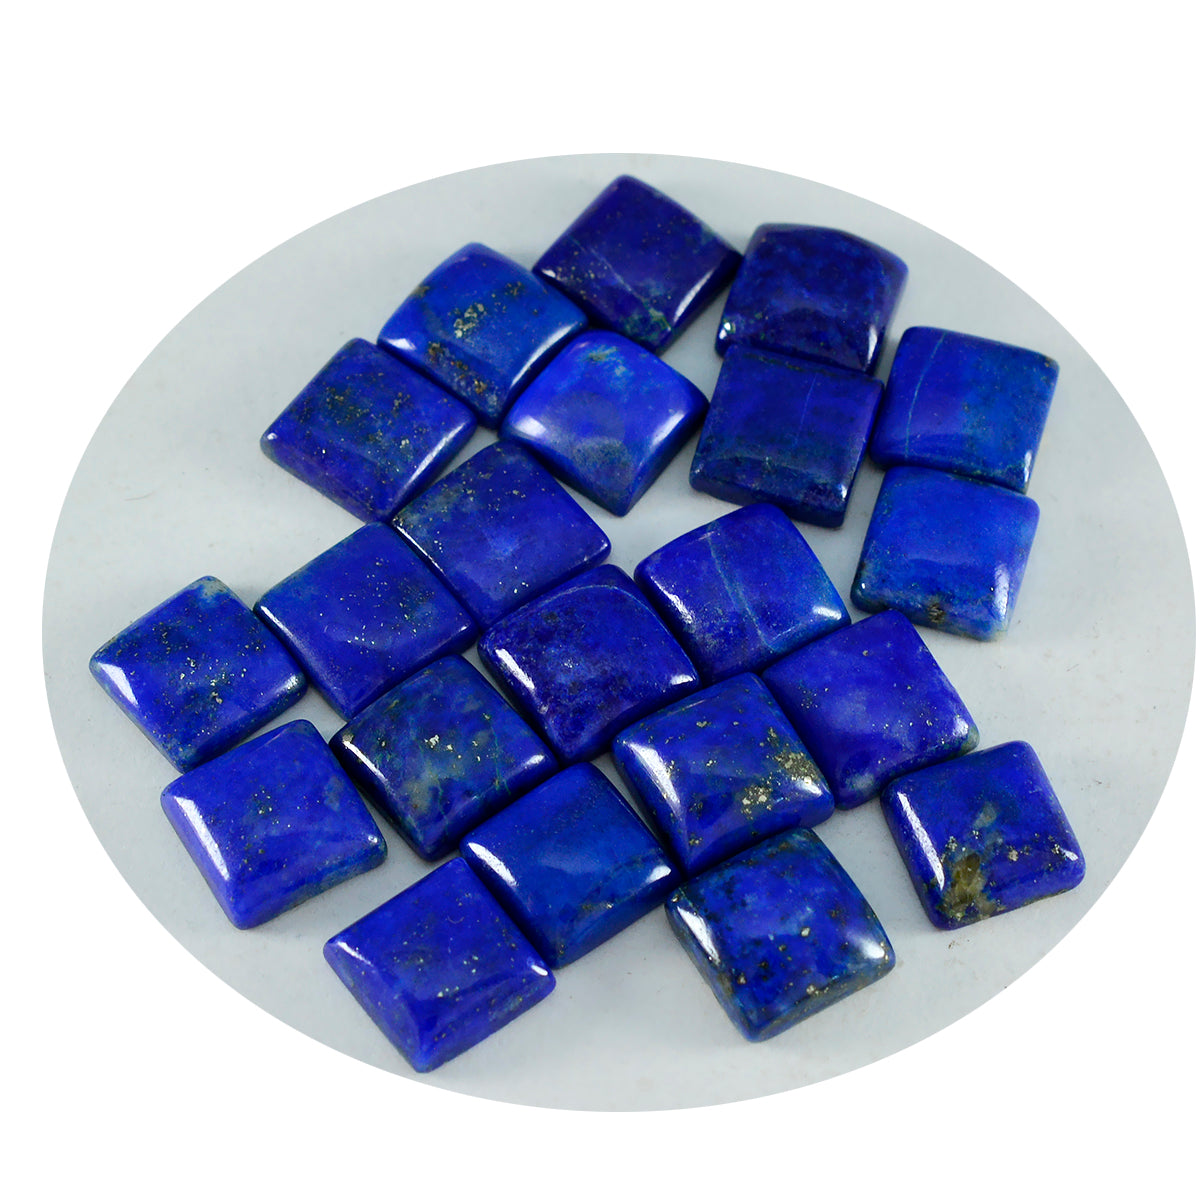 Riyogems – cabochon lapis-lazuli bleu, forme carrée, 9x9mm, jolie pierre précieuse en vrac de qualité, 1 pièce